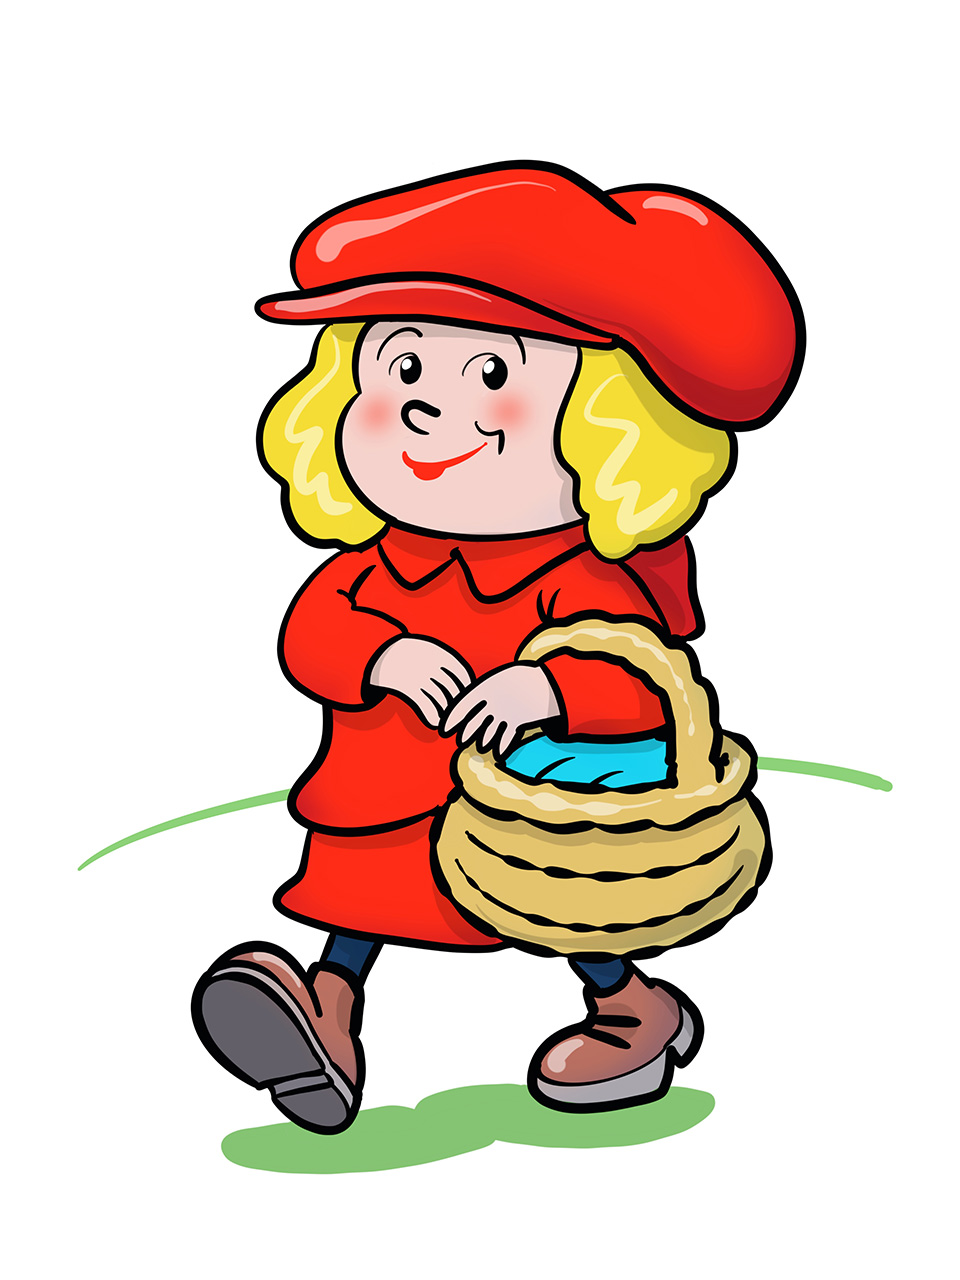 Crvenkapica odjevena u crveni kaputić i s crvenom kapom na glavi, Pod rukom nosi košaru s hranom.